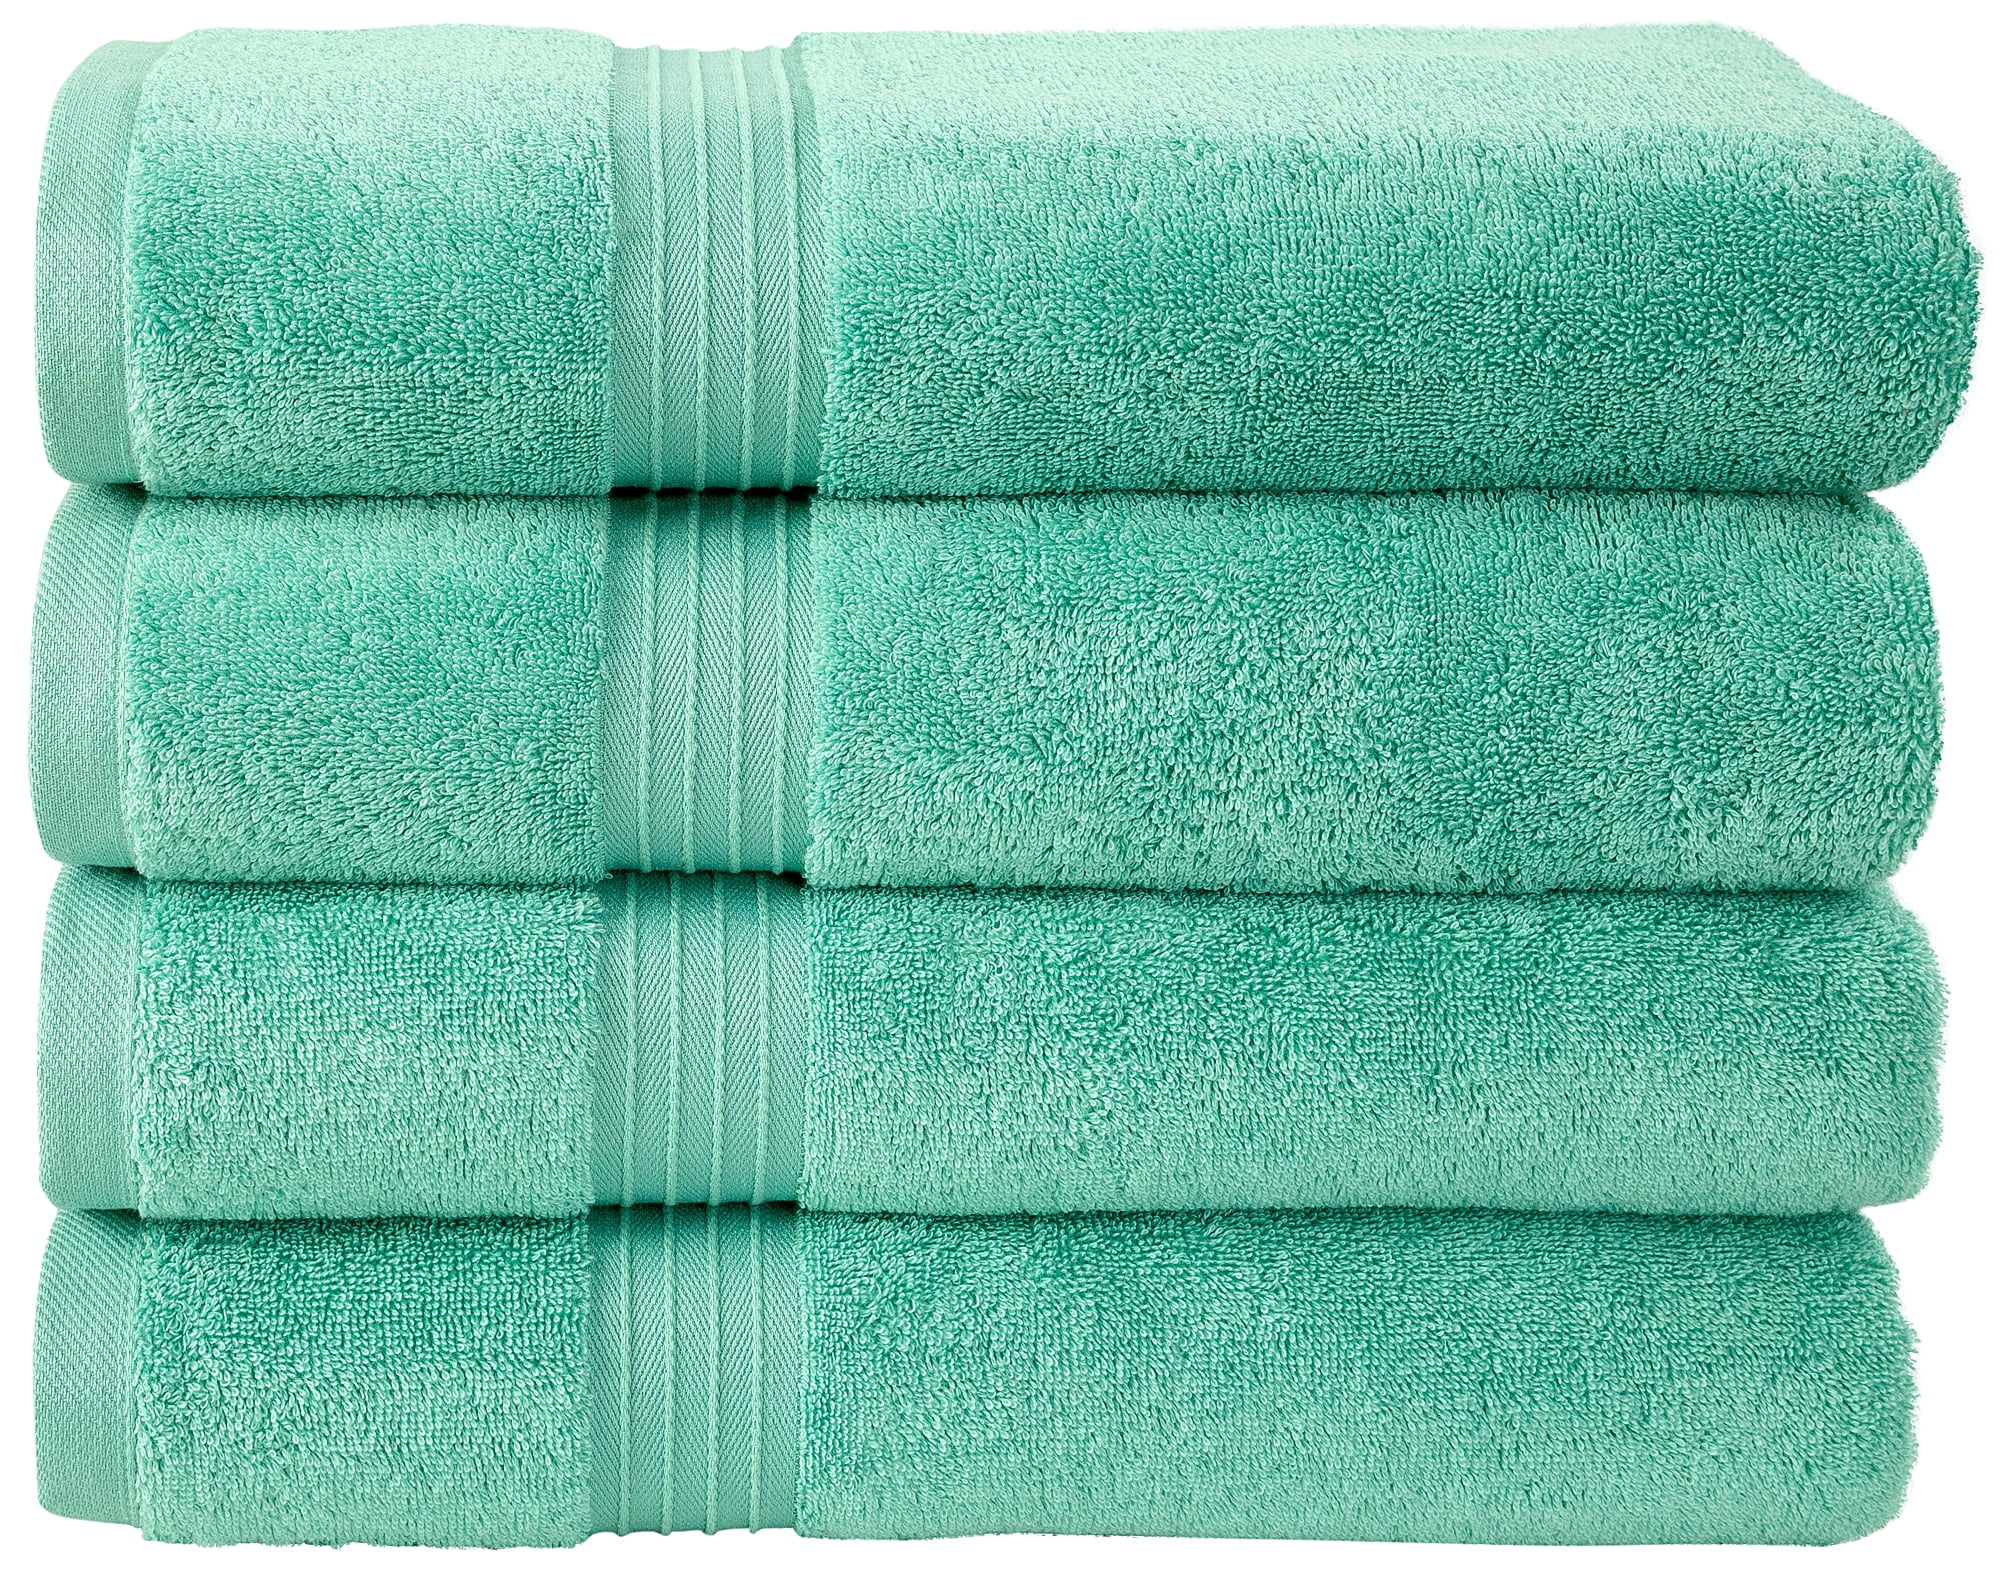 Details about   100% Cotton Premium Towels 600 GSM Super Soft Ivory Solid 6 Piece Towel Set 